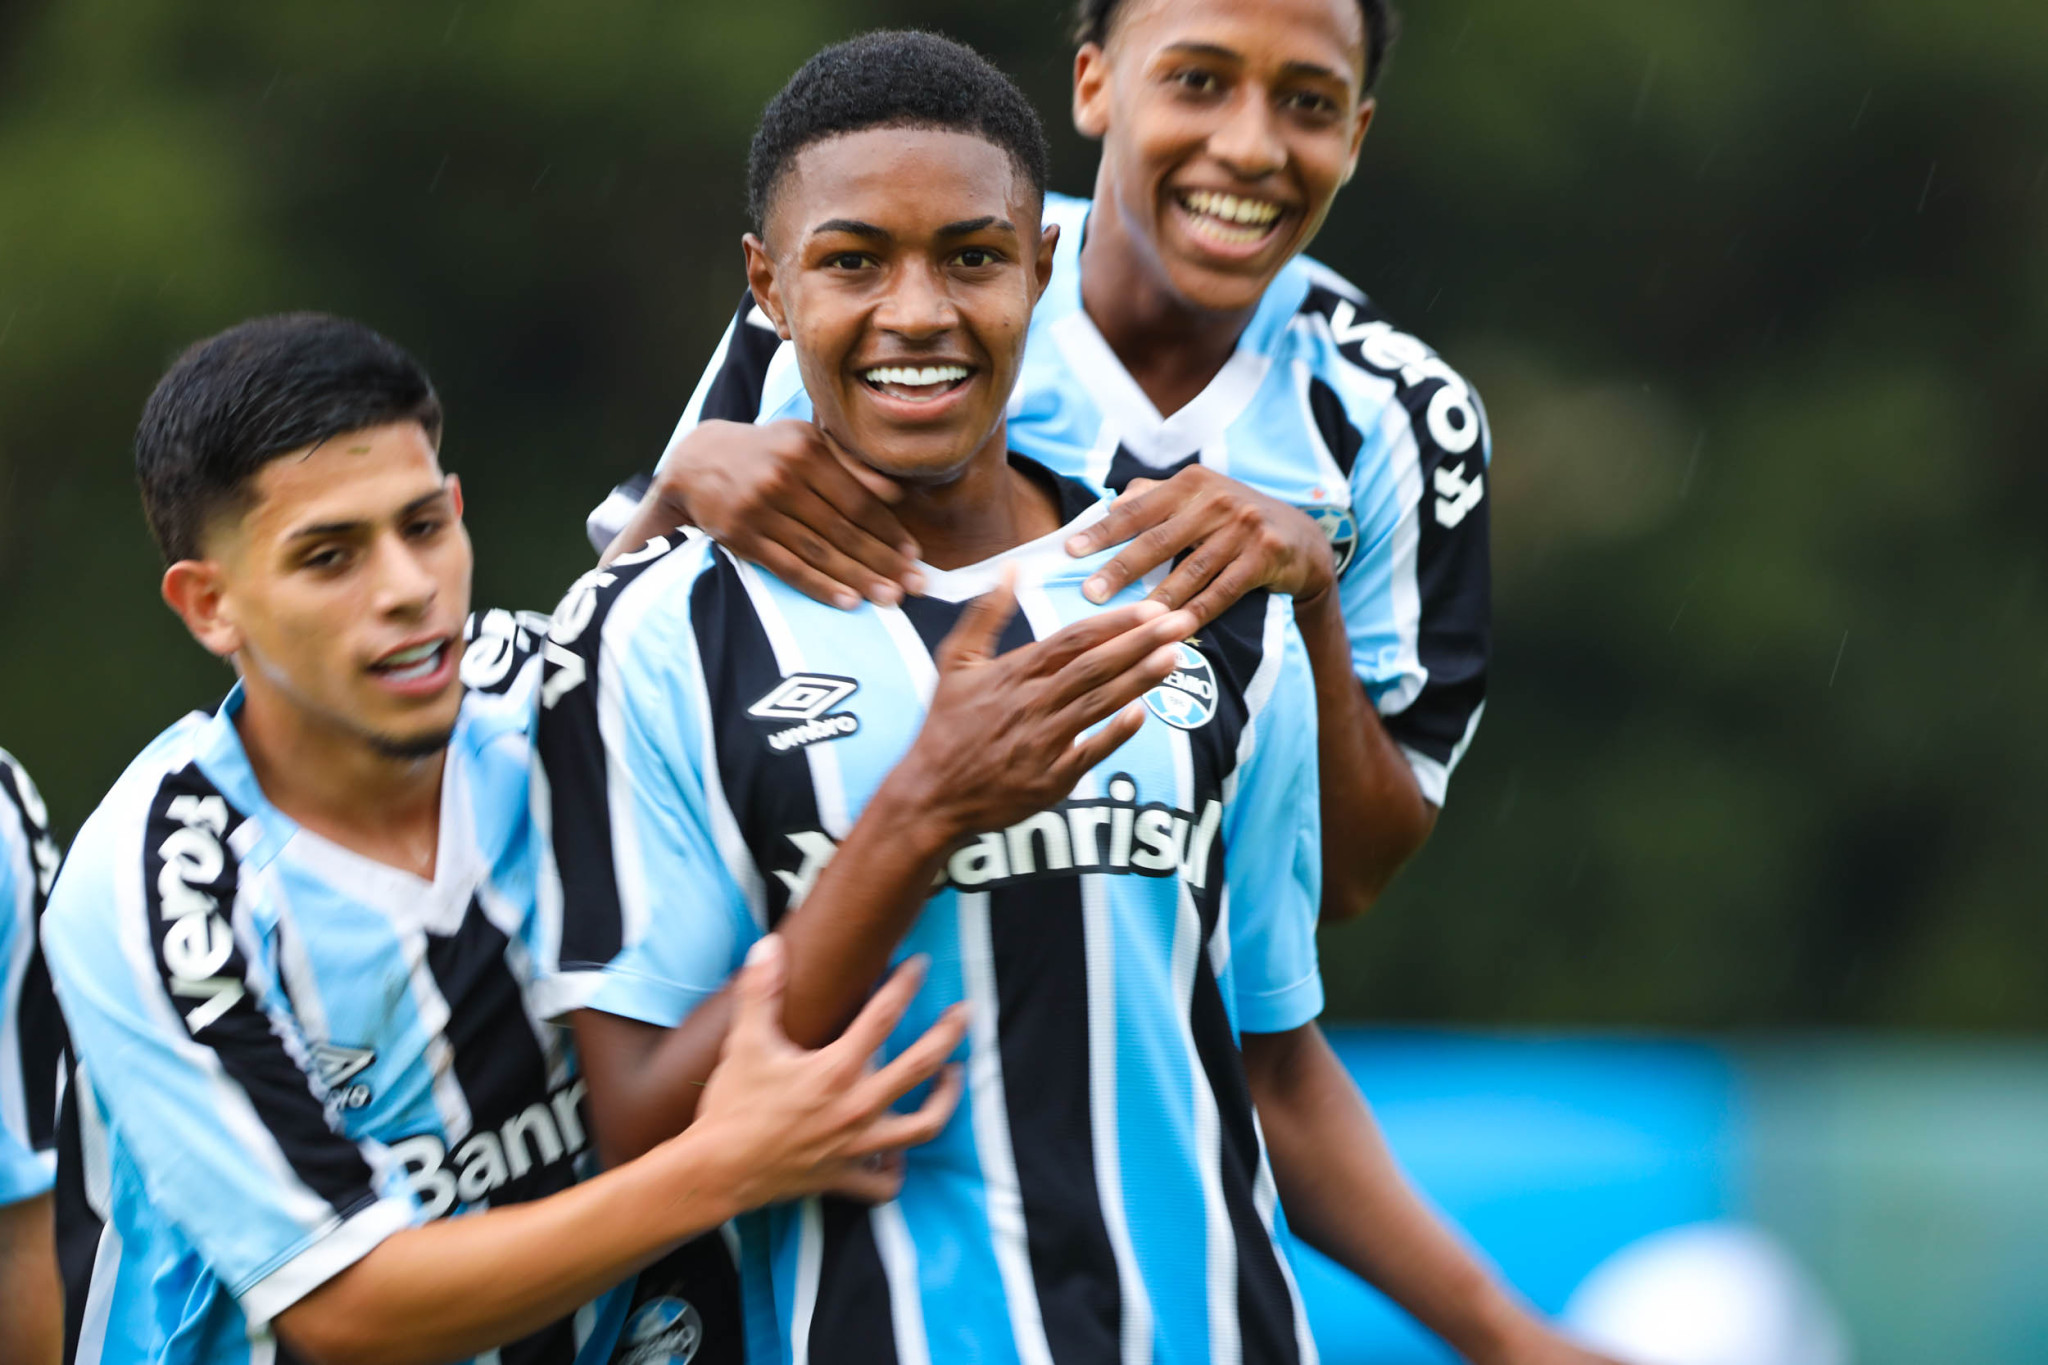 Tombense vs Villa Nova: An Exciting Clash of Minas Gerais Football